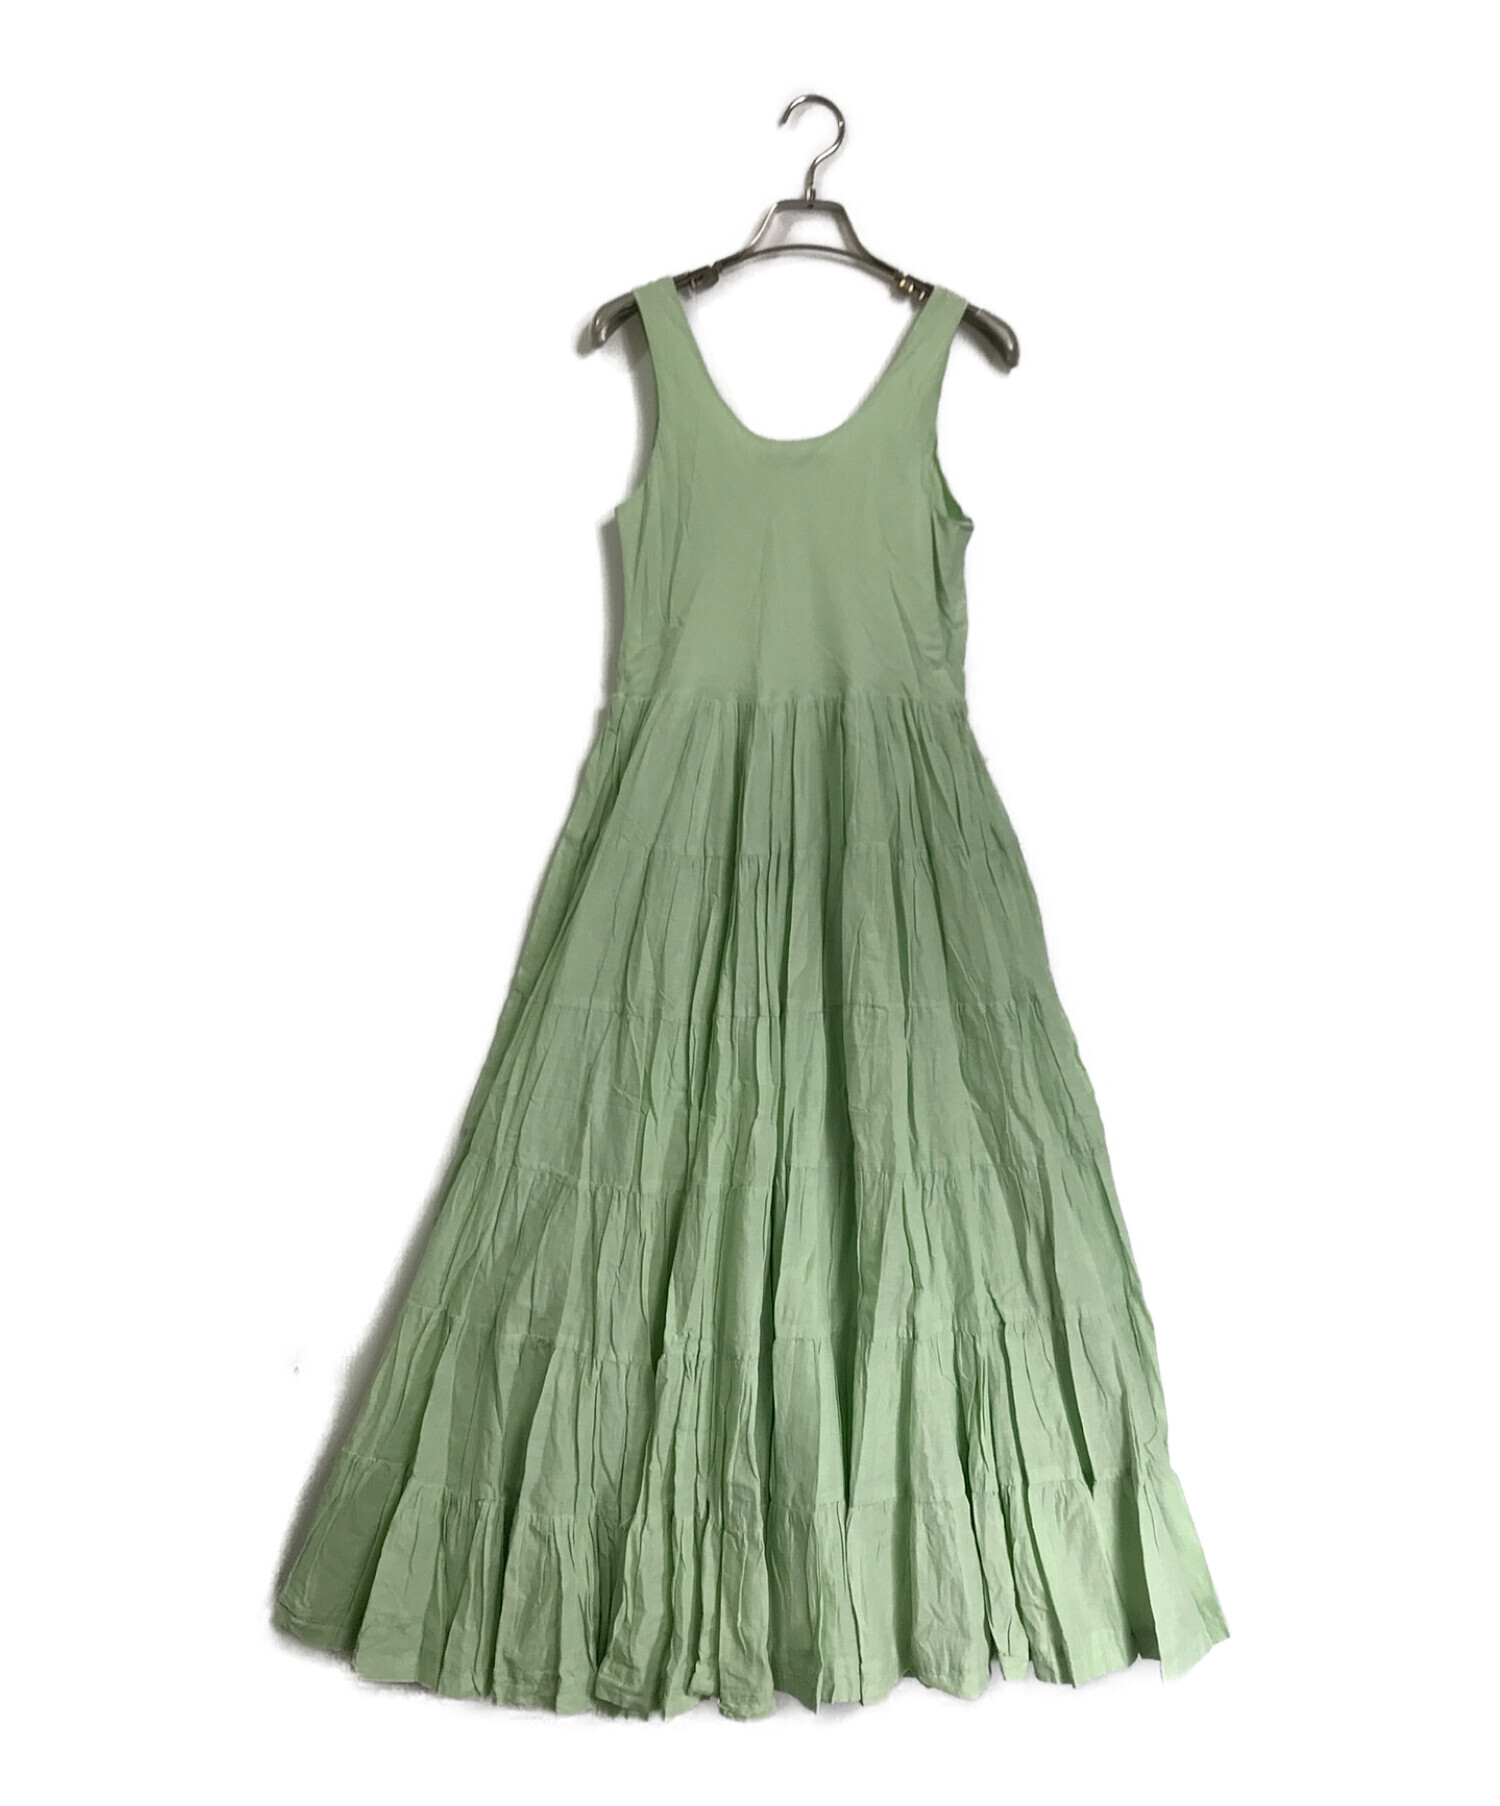 MARIHA (マリハ) 草原の虹のドレス グリーン サイズ:36